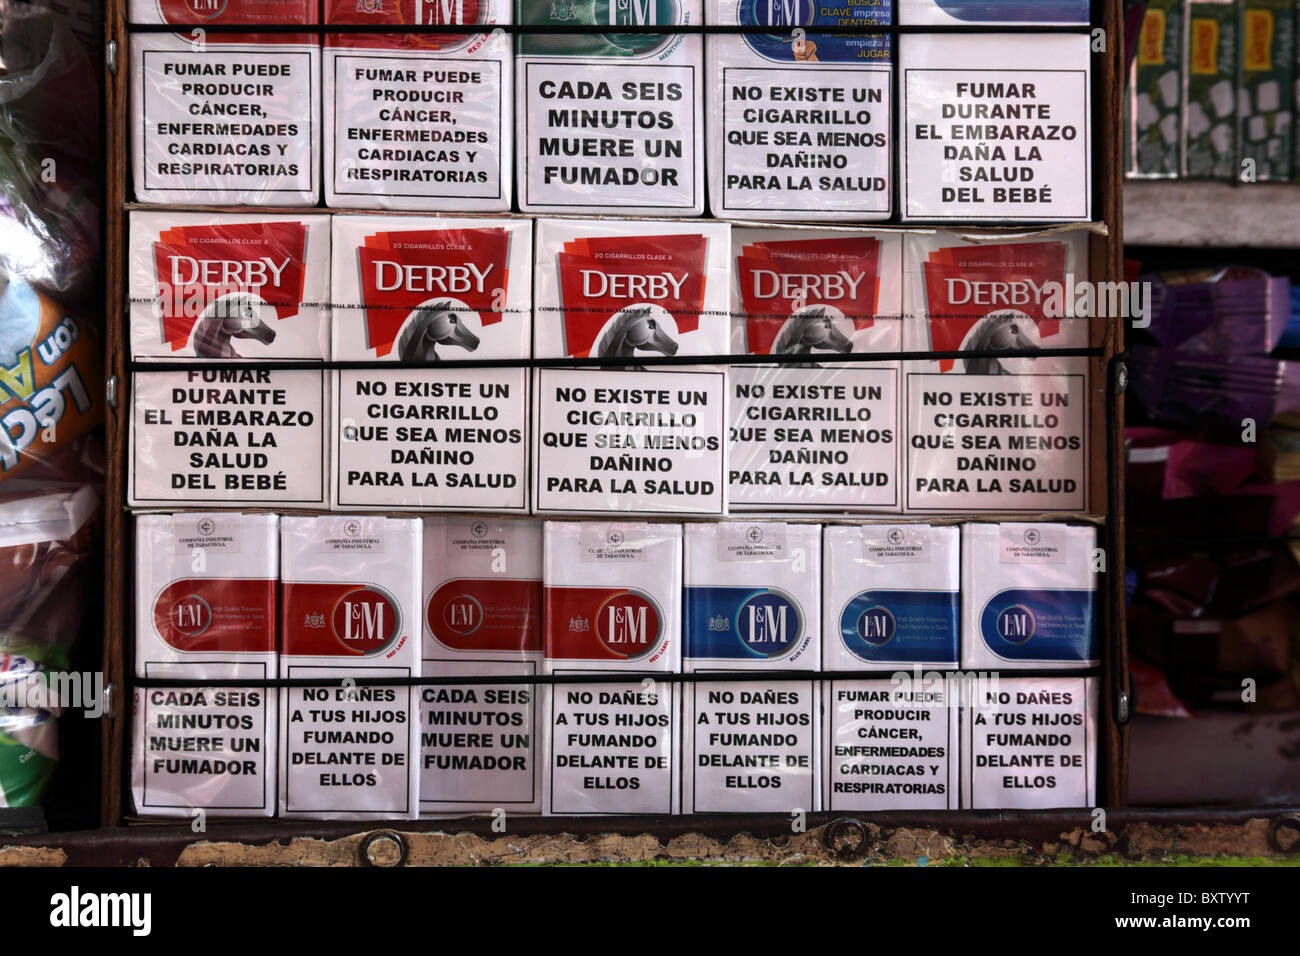 Pacchetti di sigarette di varie marche in vendita con avvertenze per la salute in lingua spagnola, Bolivia Foto Stock